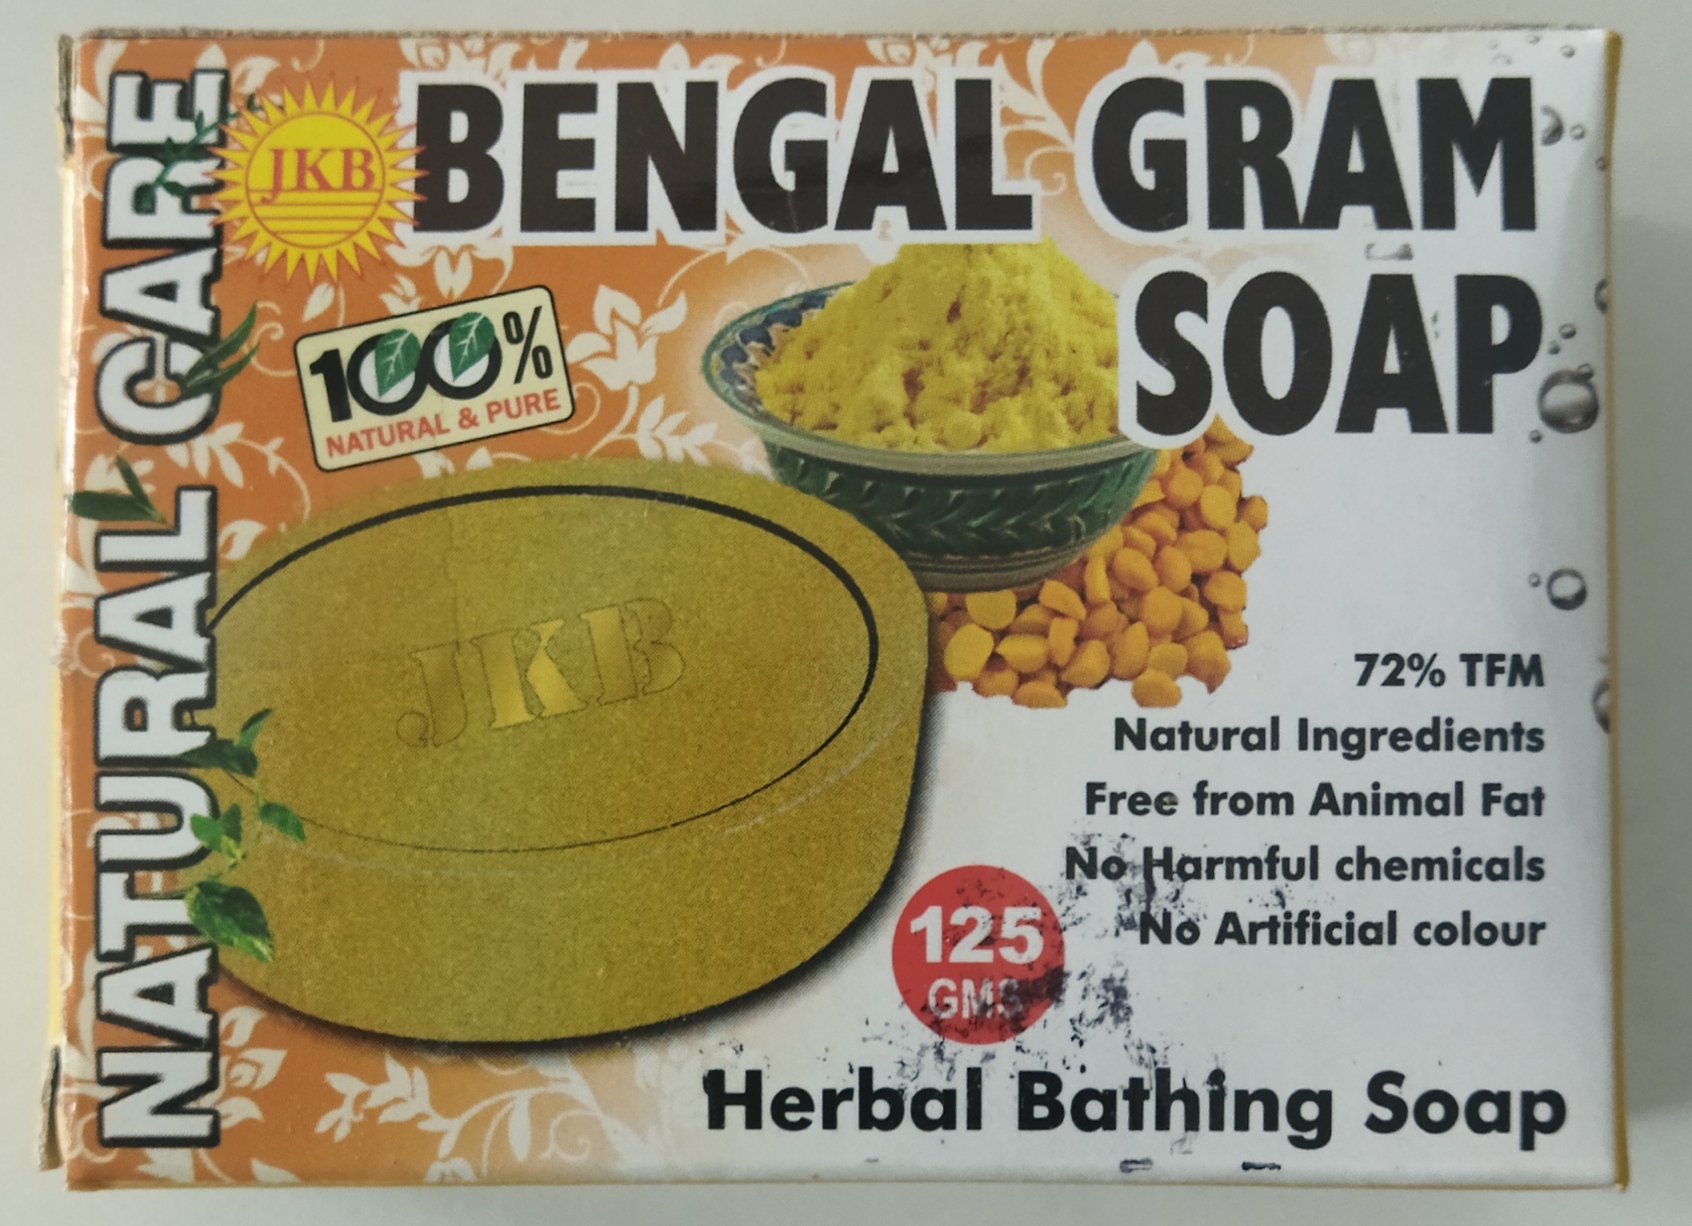 JKB Bengal gram soap